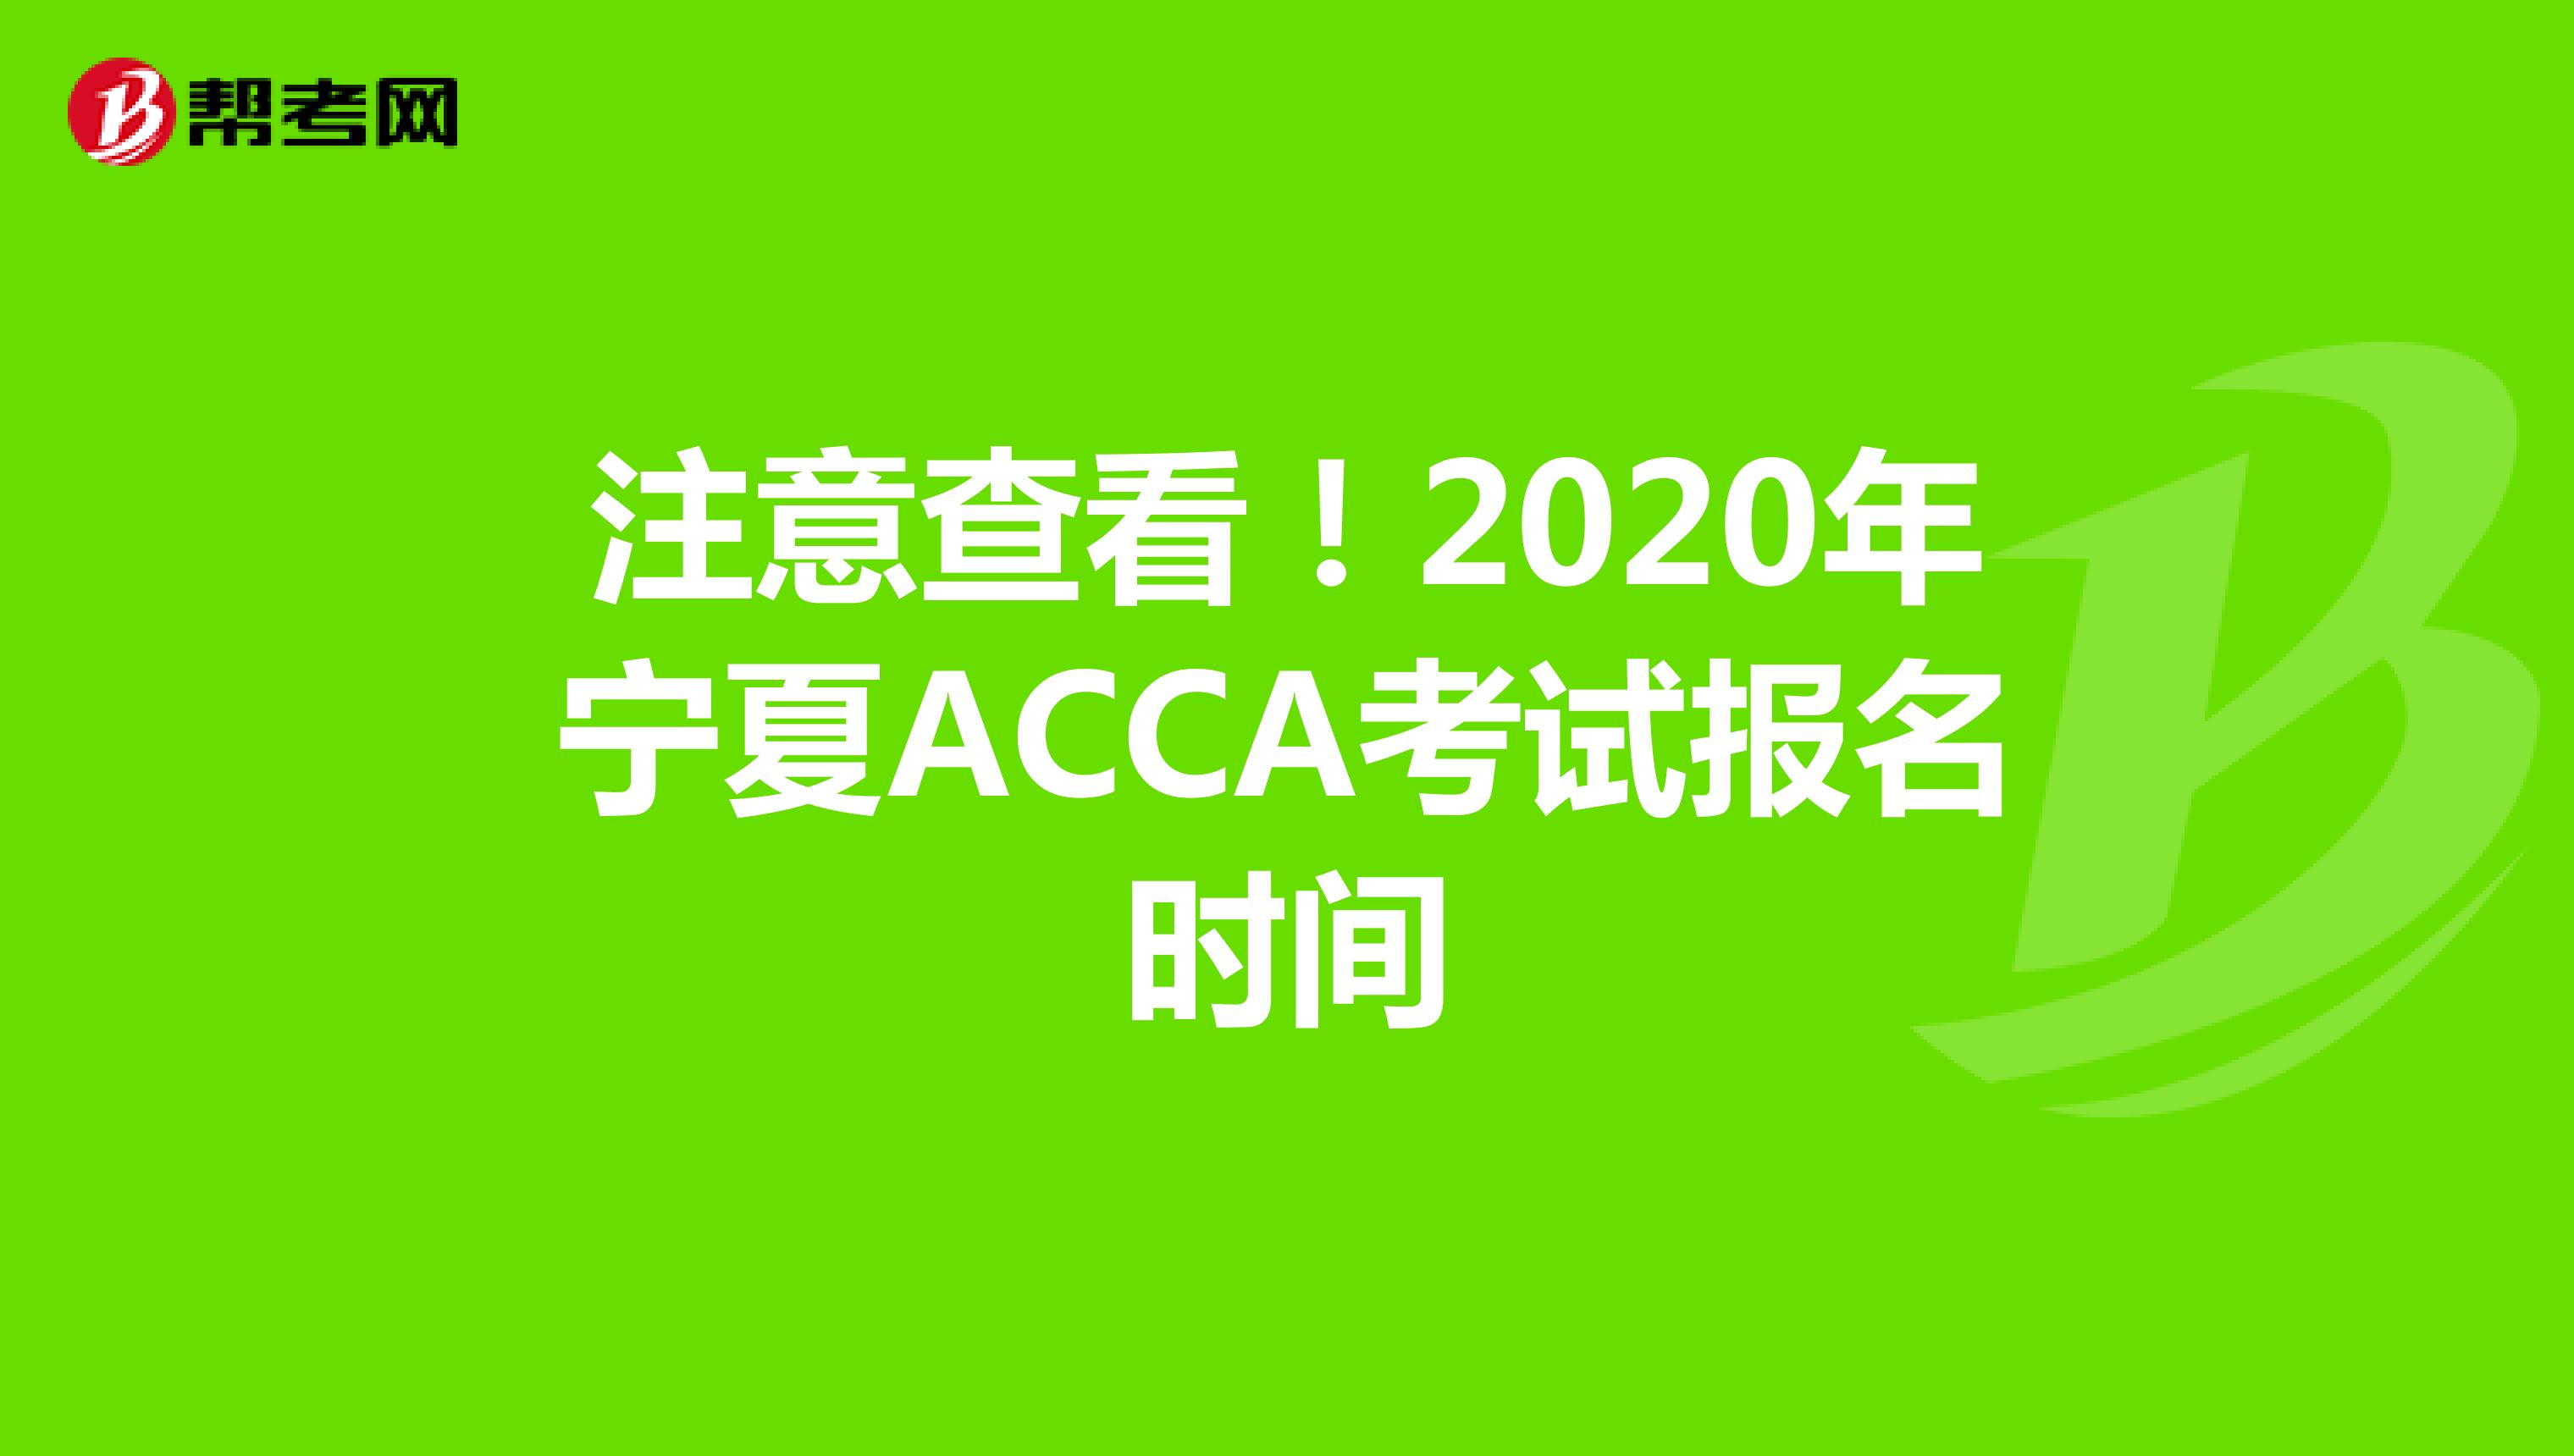 注意查看！2020年宁夏ACCA考试报名时间公布了